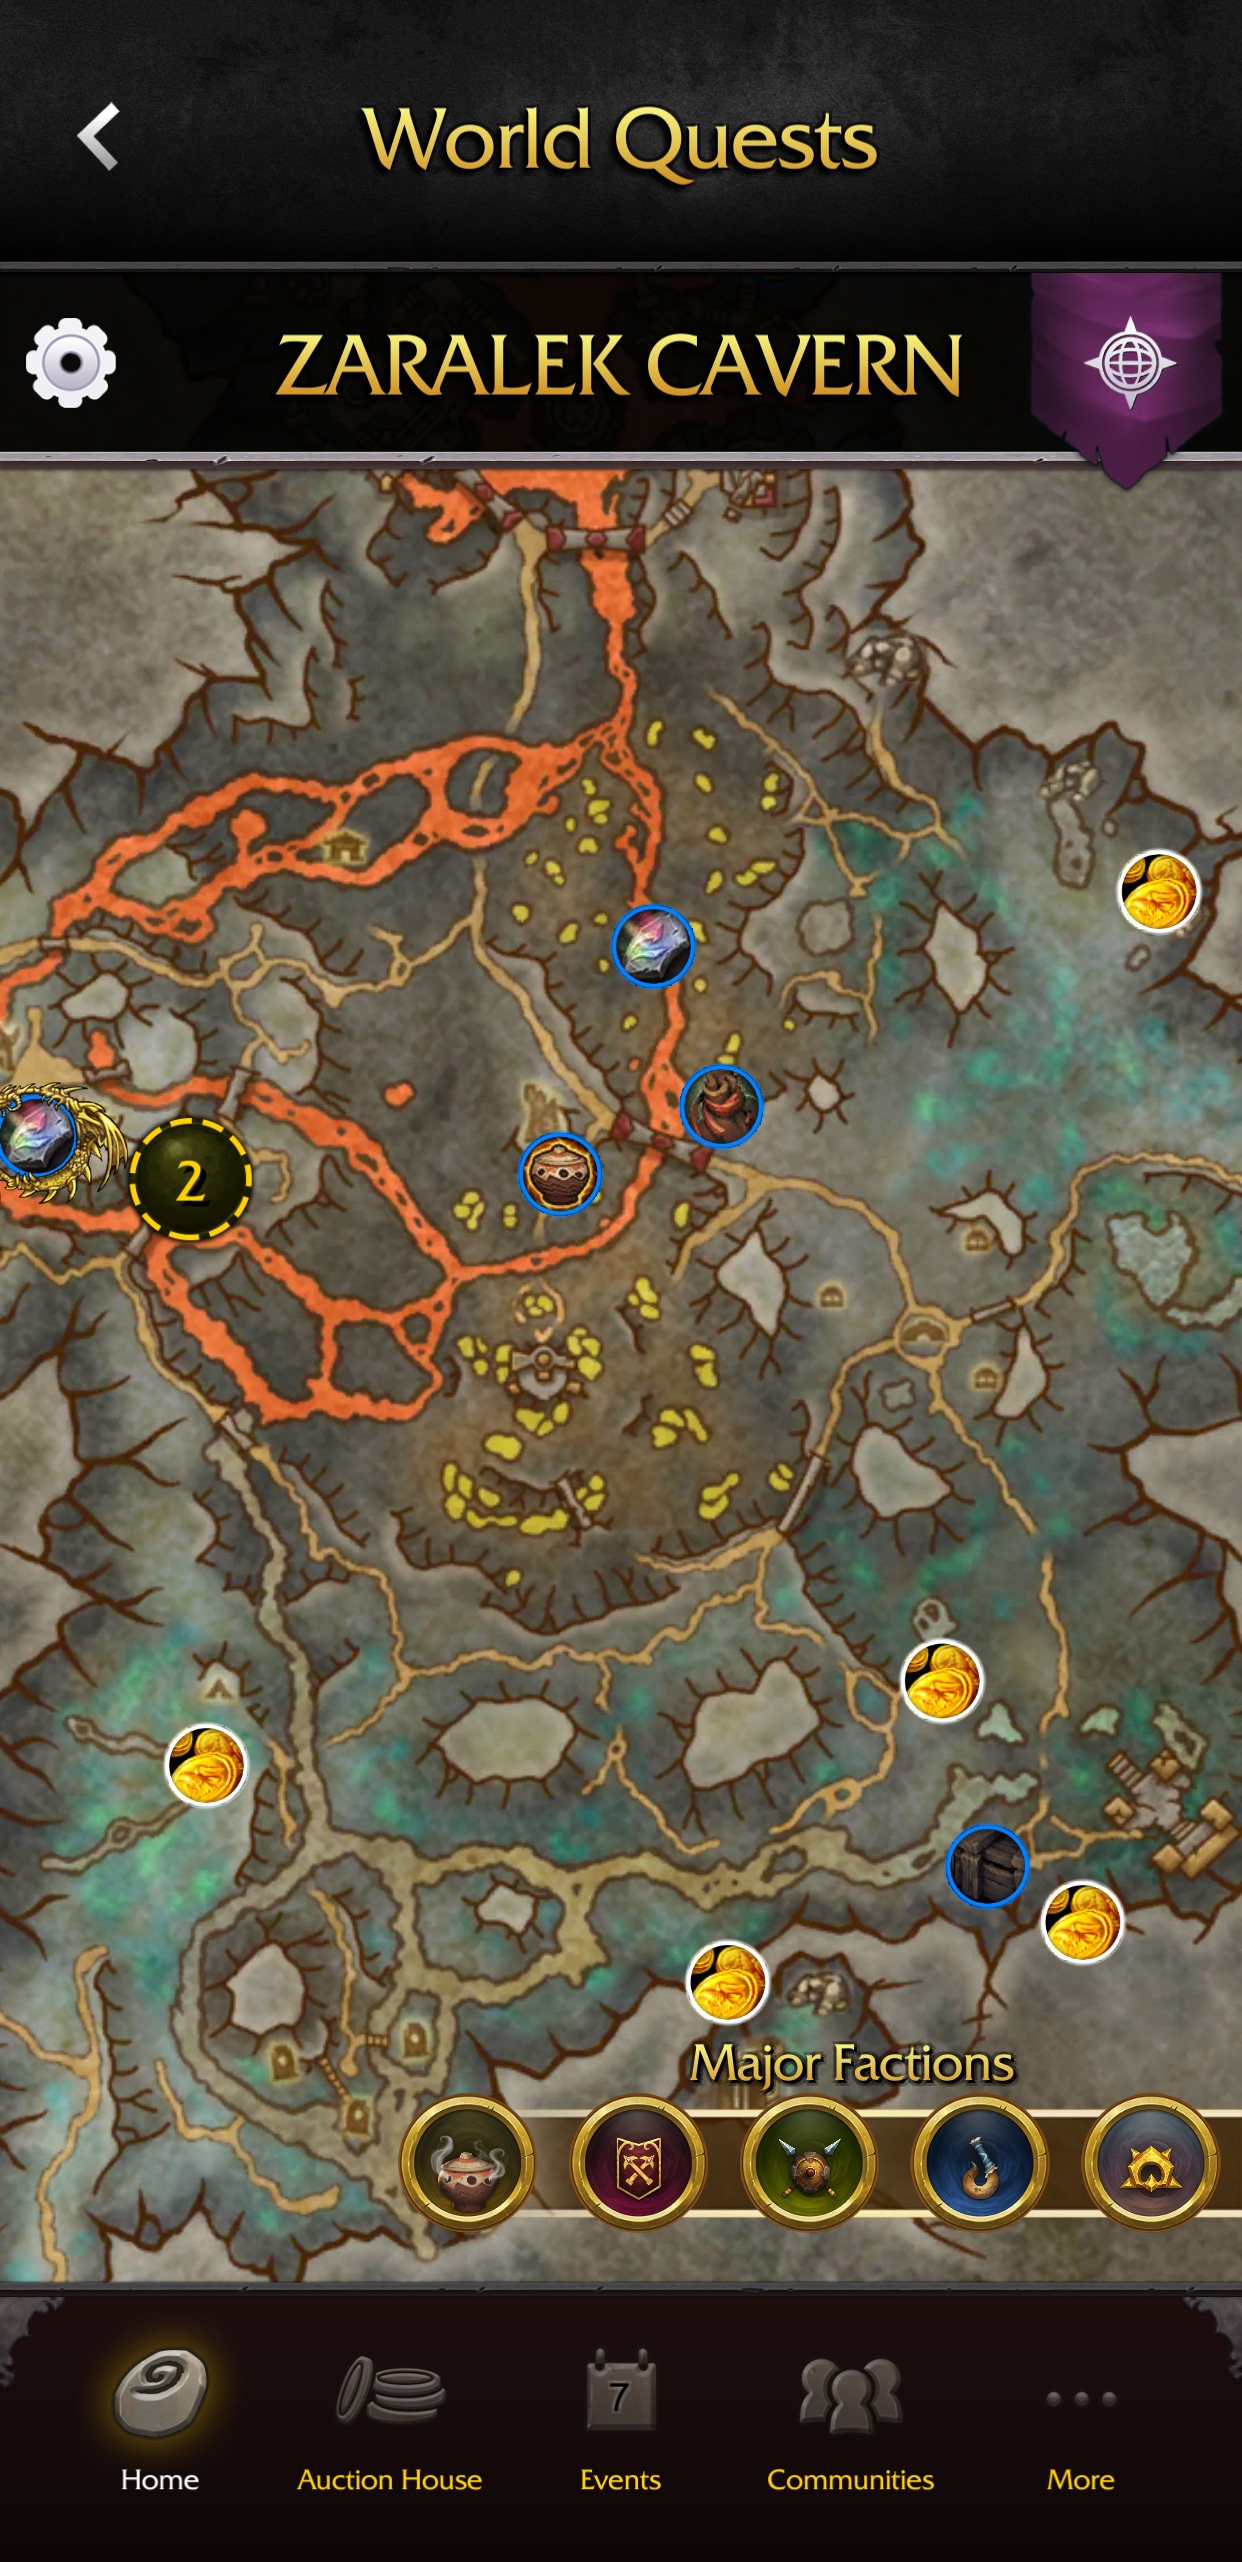 Karte von Zaralek Cavern mit Markierungen für Hauptfraktionsquests